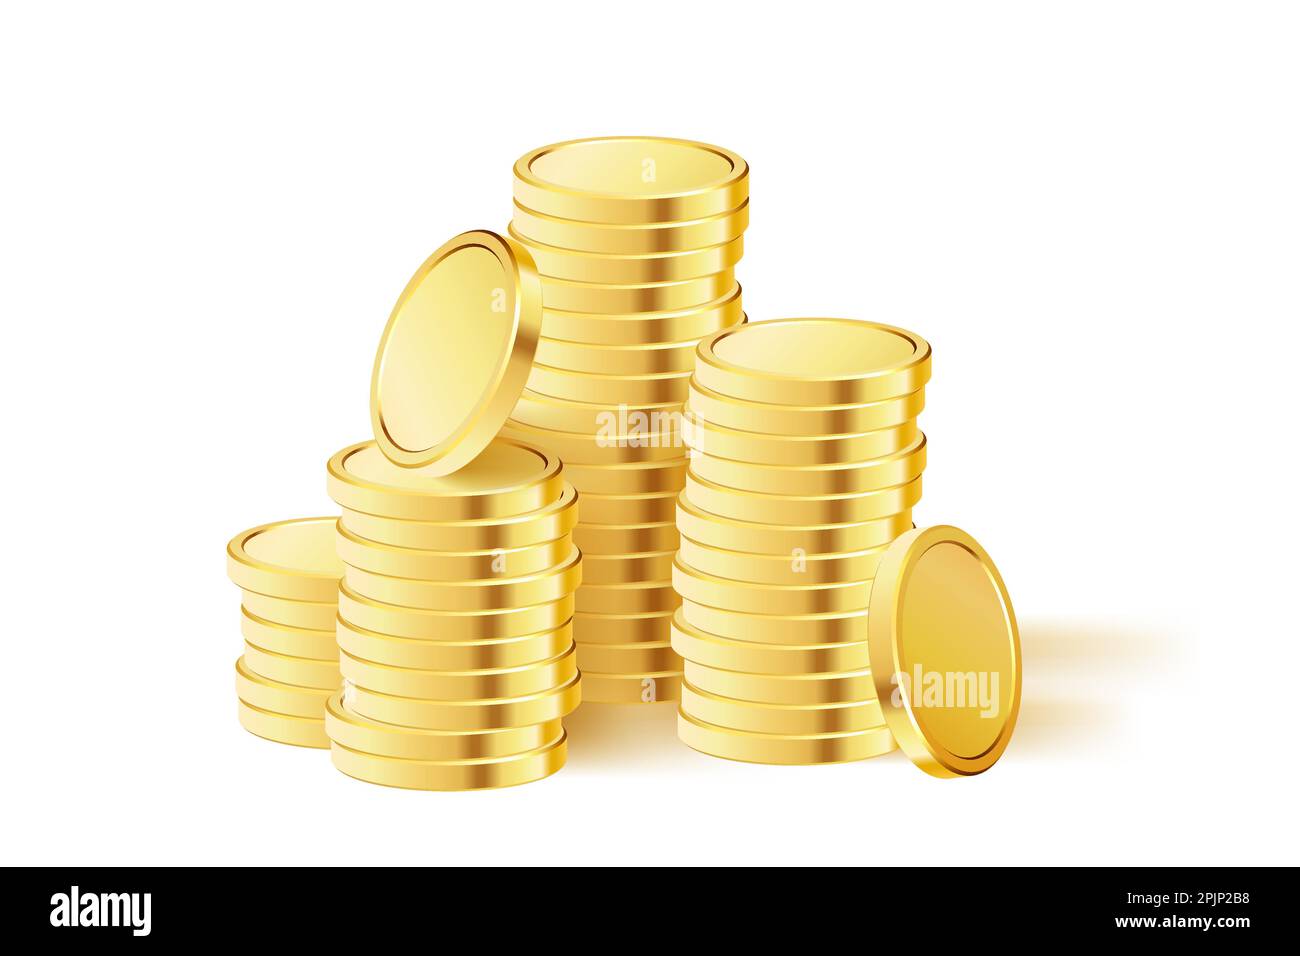 Goldmünzen-Stapel. Realistisches Goldgeld. Gestapelte Münzen. Gilt für Glücksspiele, Jackpot oder Bank- oder Finanzbeispiele. Vektordarstellung Stock Vektor